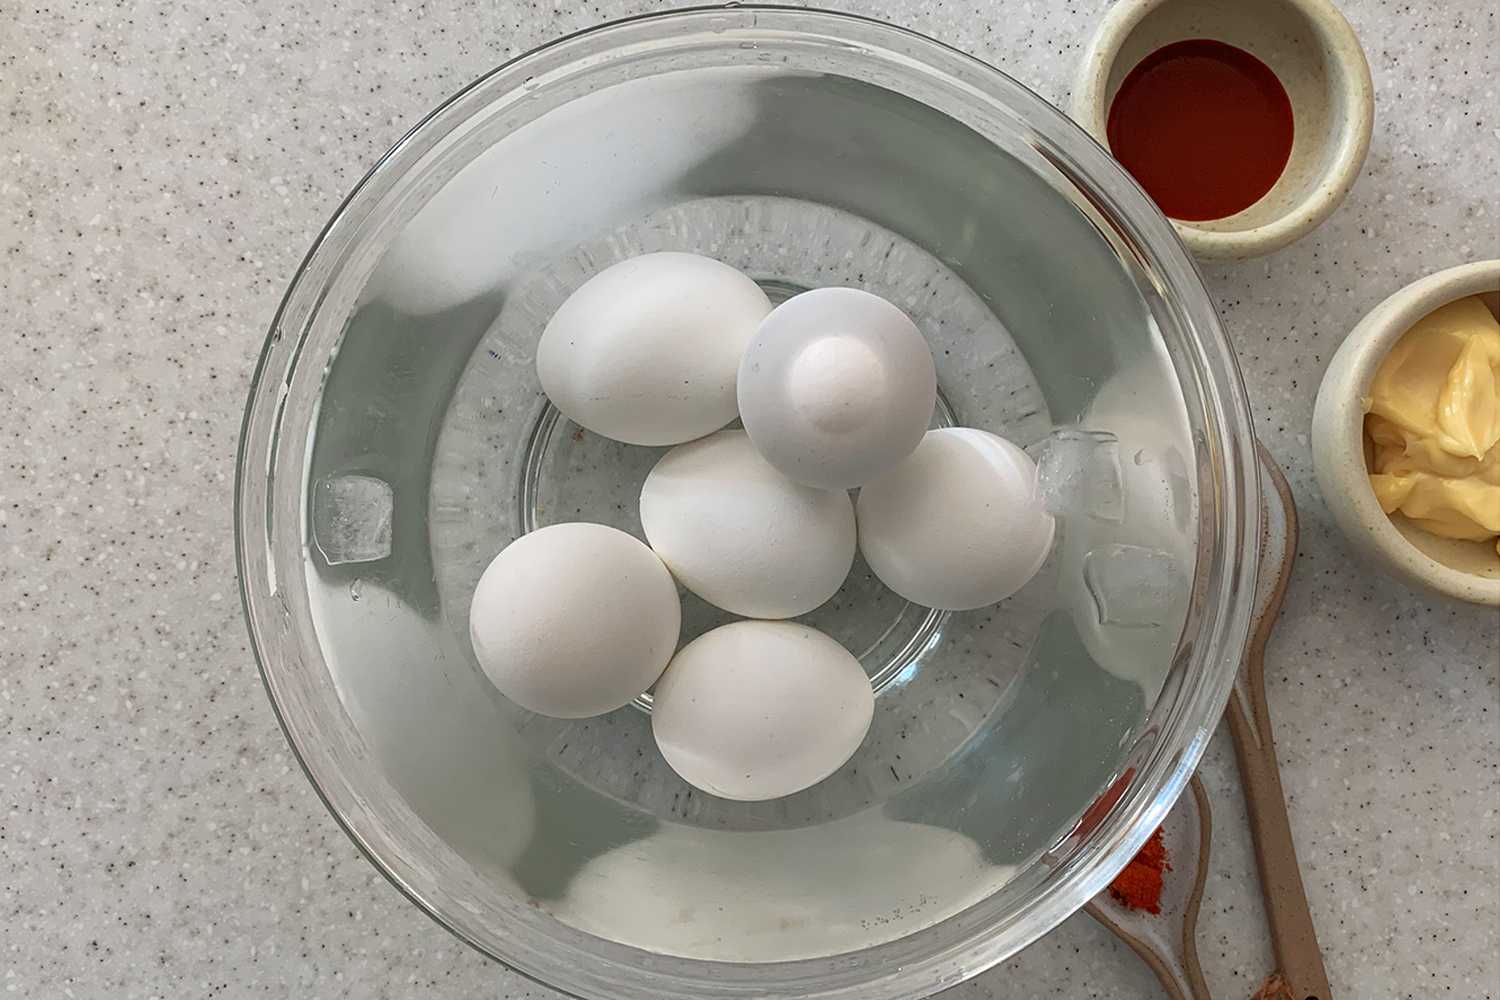 Instant Pot Deviled Eggs